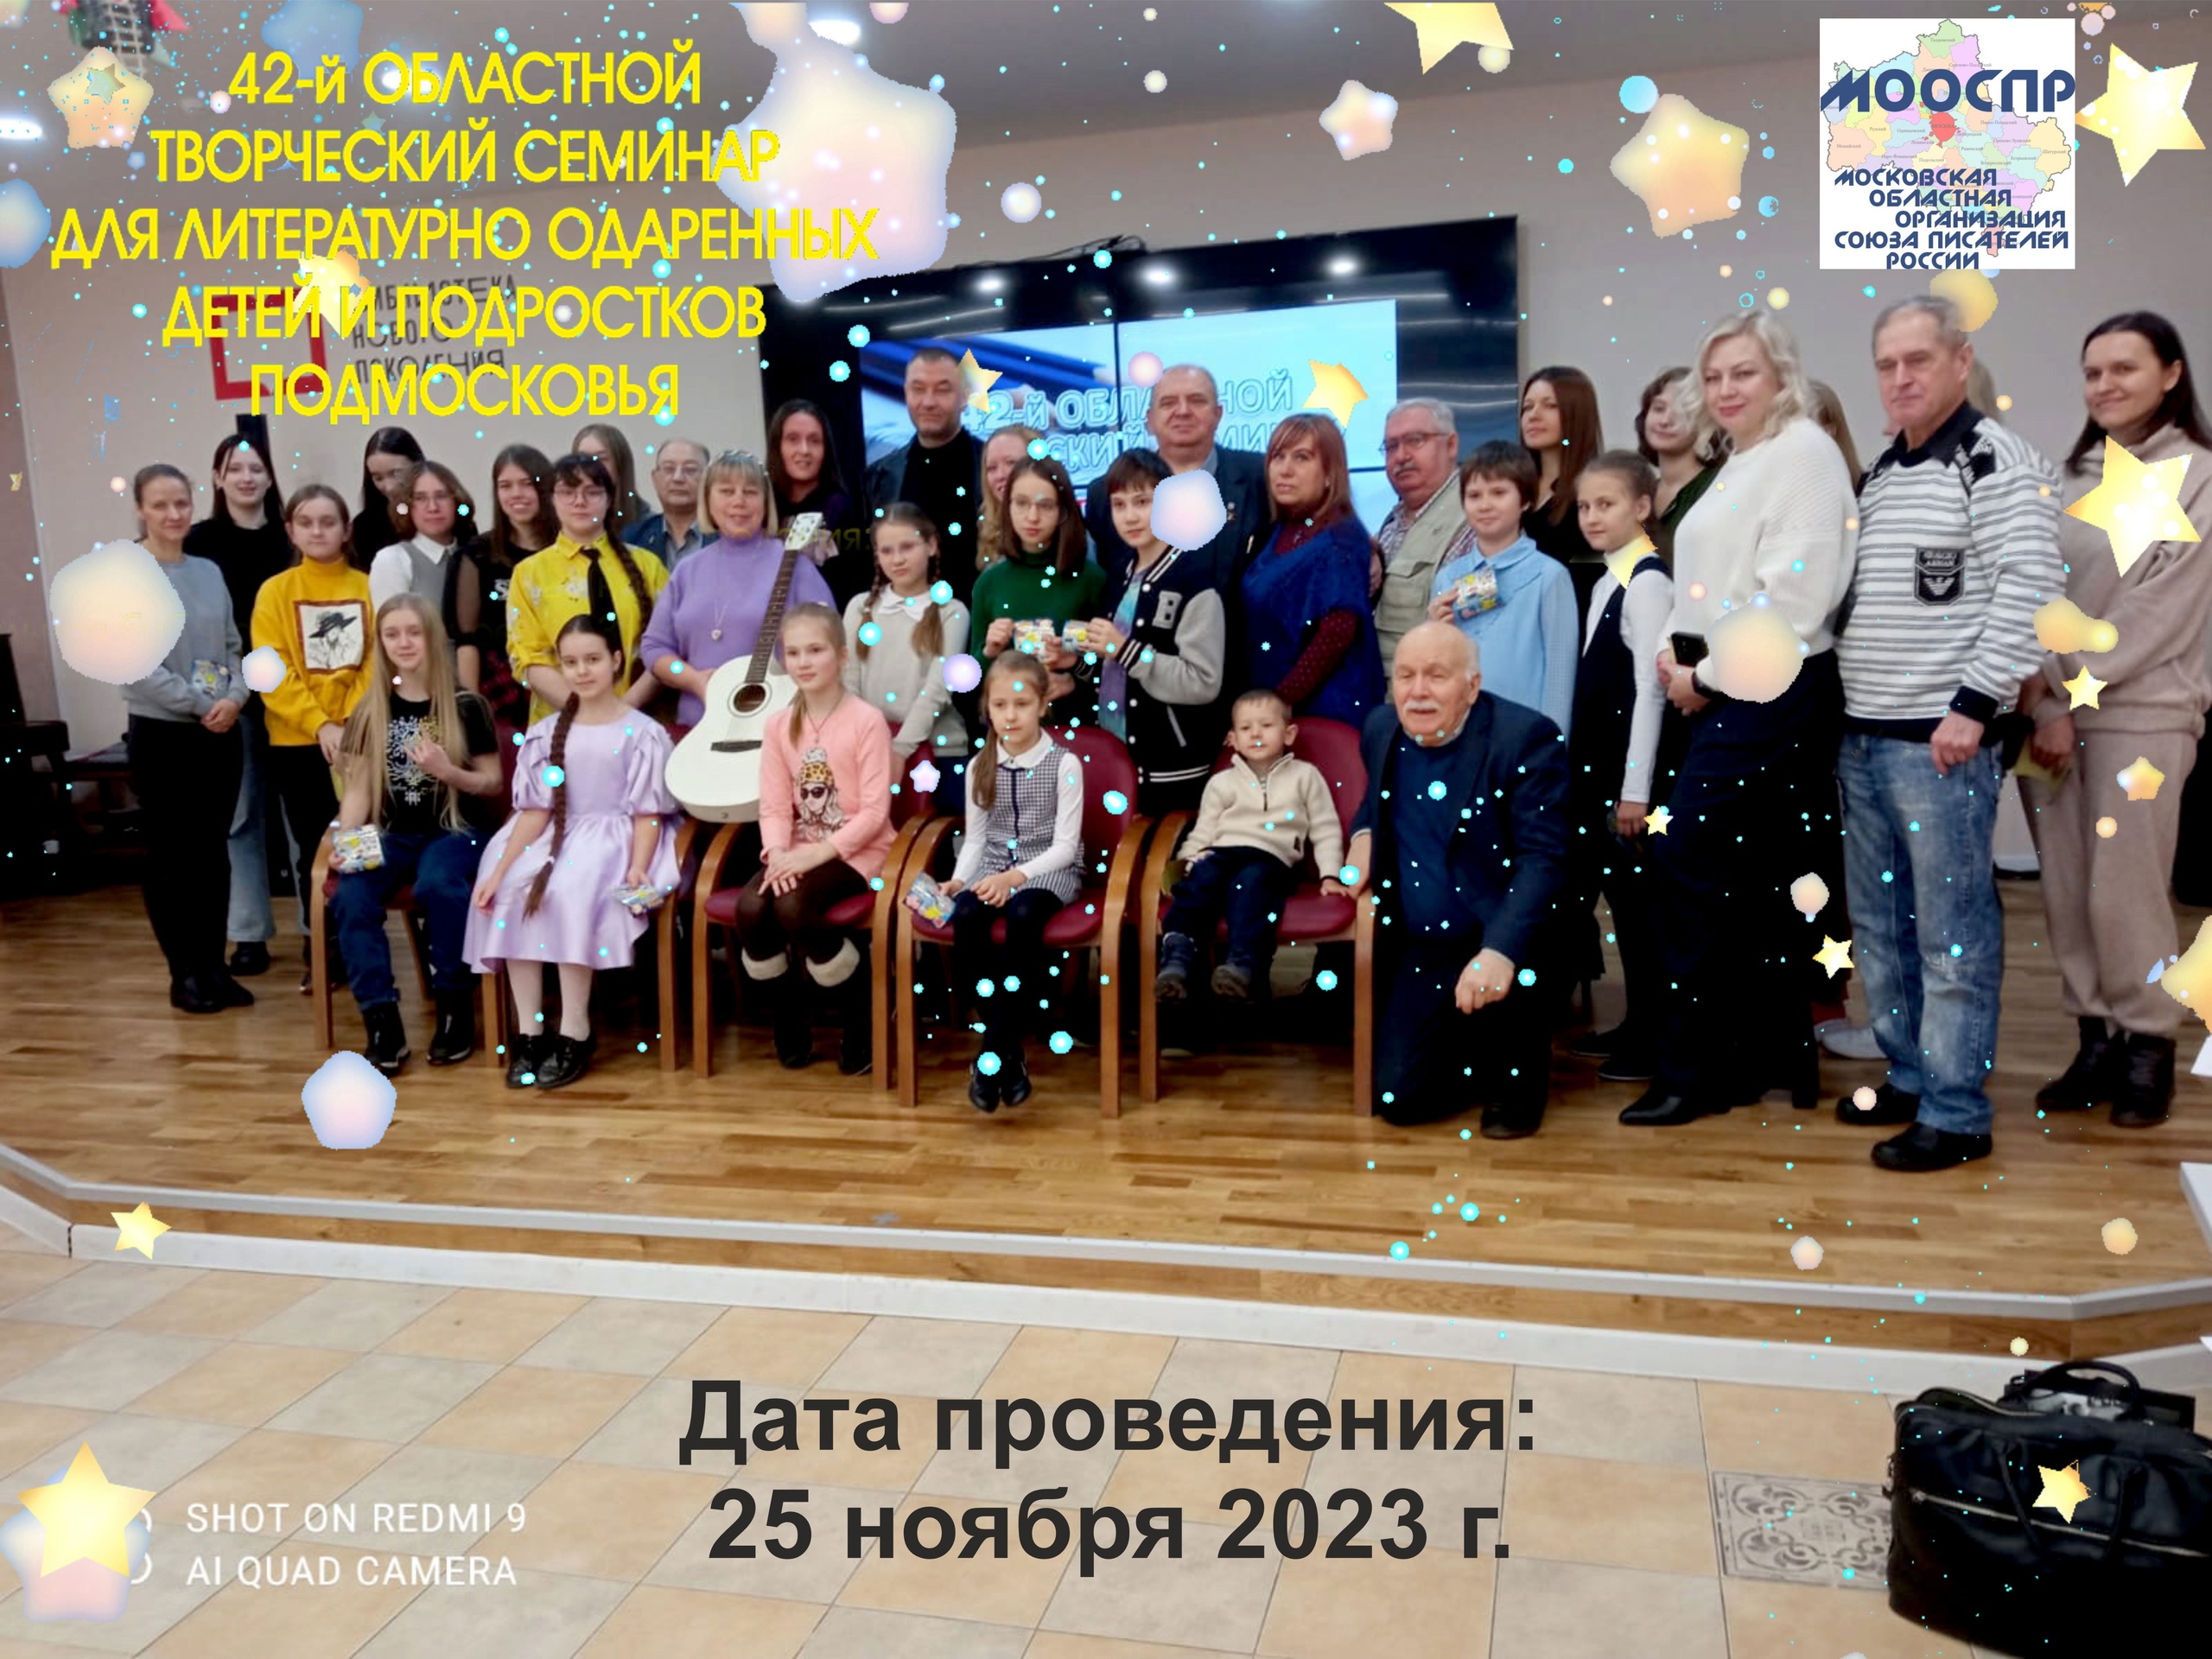 42-й Областной творческий семинар для литературно одаренных детей и подростков Подмосковья.